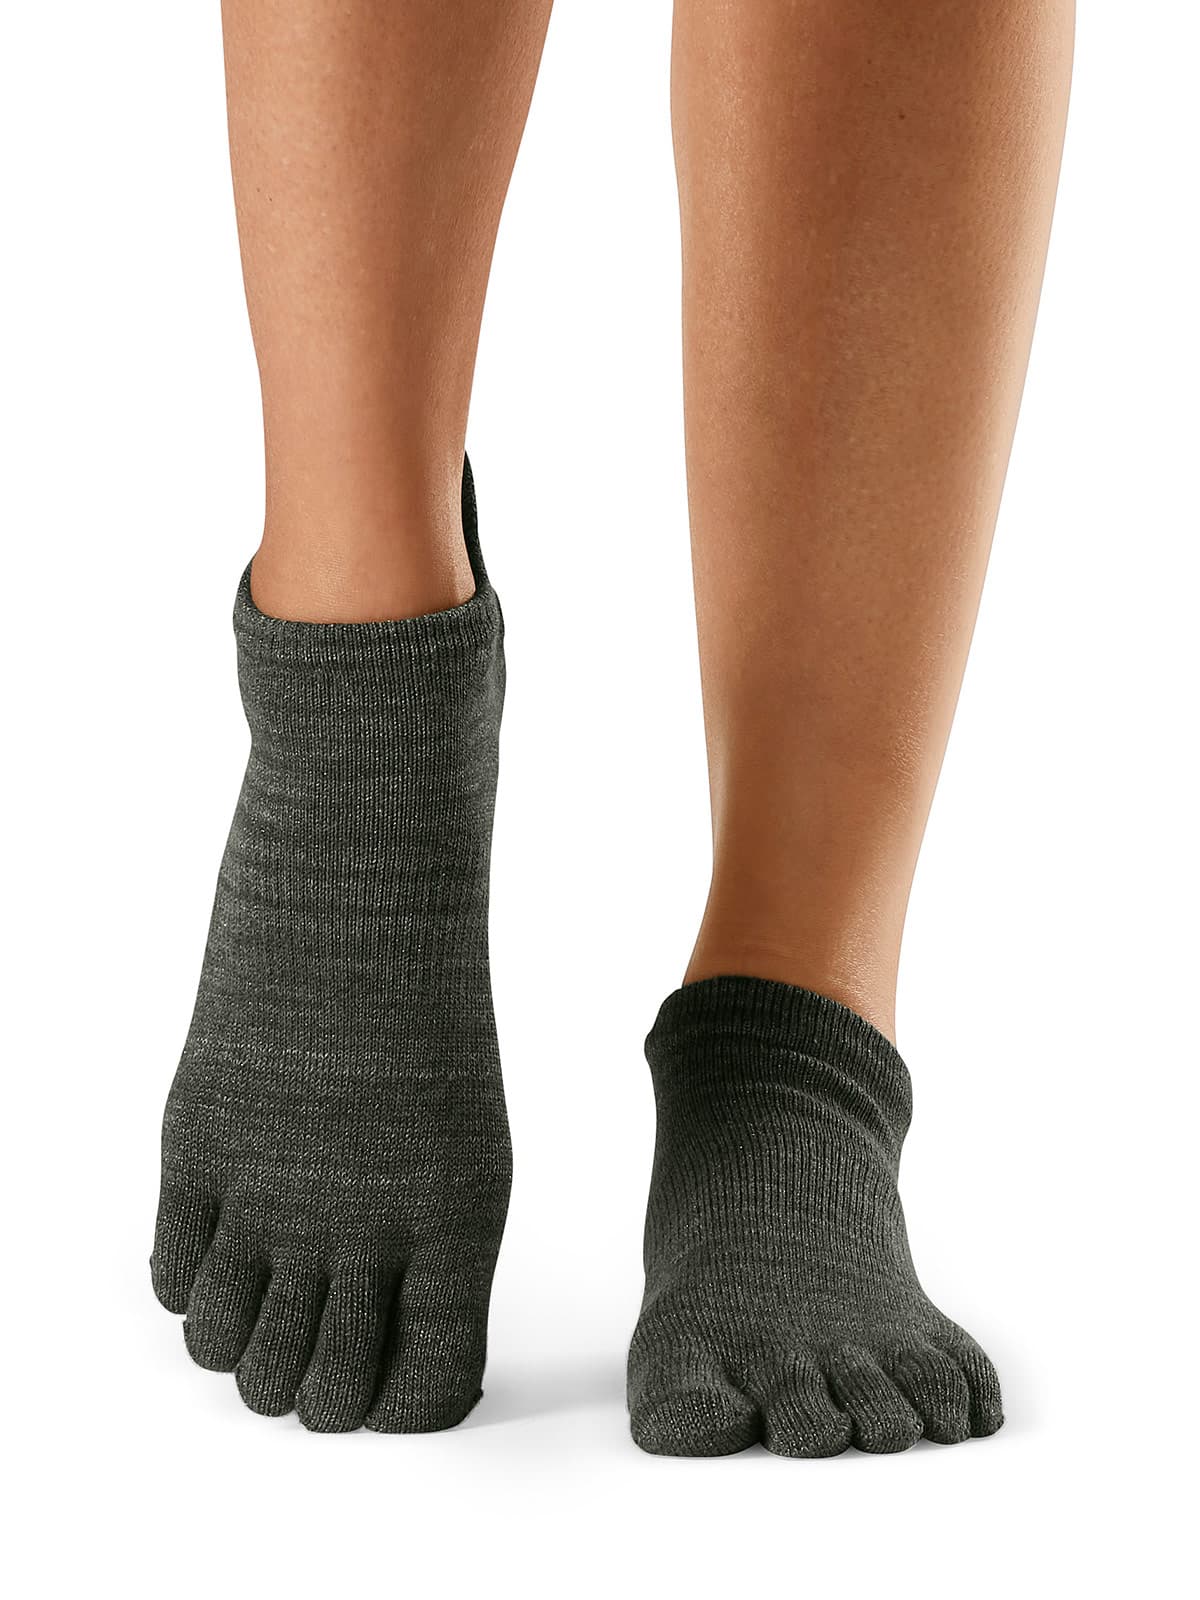 Toesox Full Toe Low Rise Grip Socks Jade Çorap S01825JDE 2